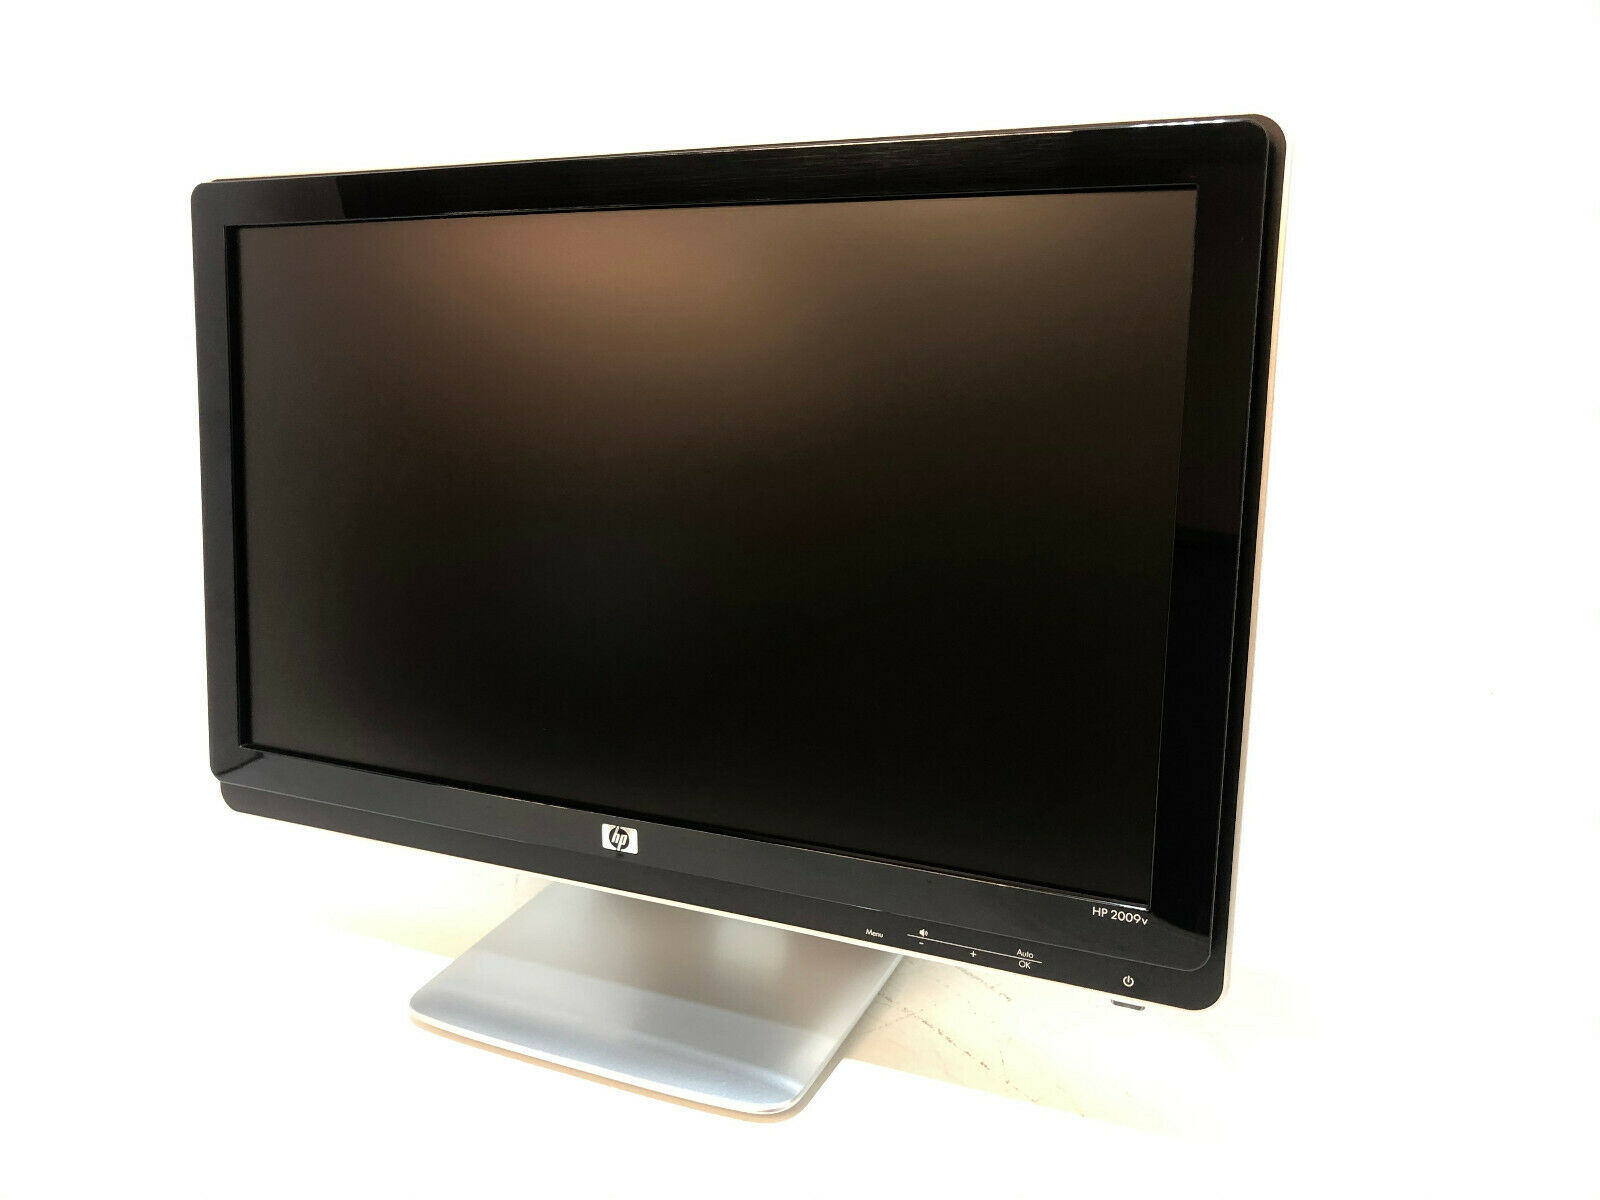 Refurbished HP 2009v LCD Monitor